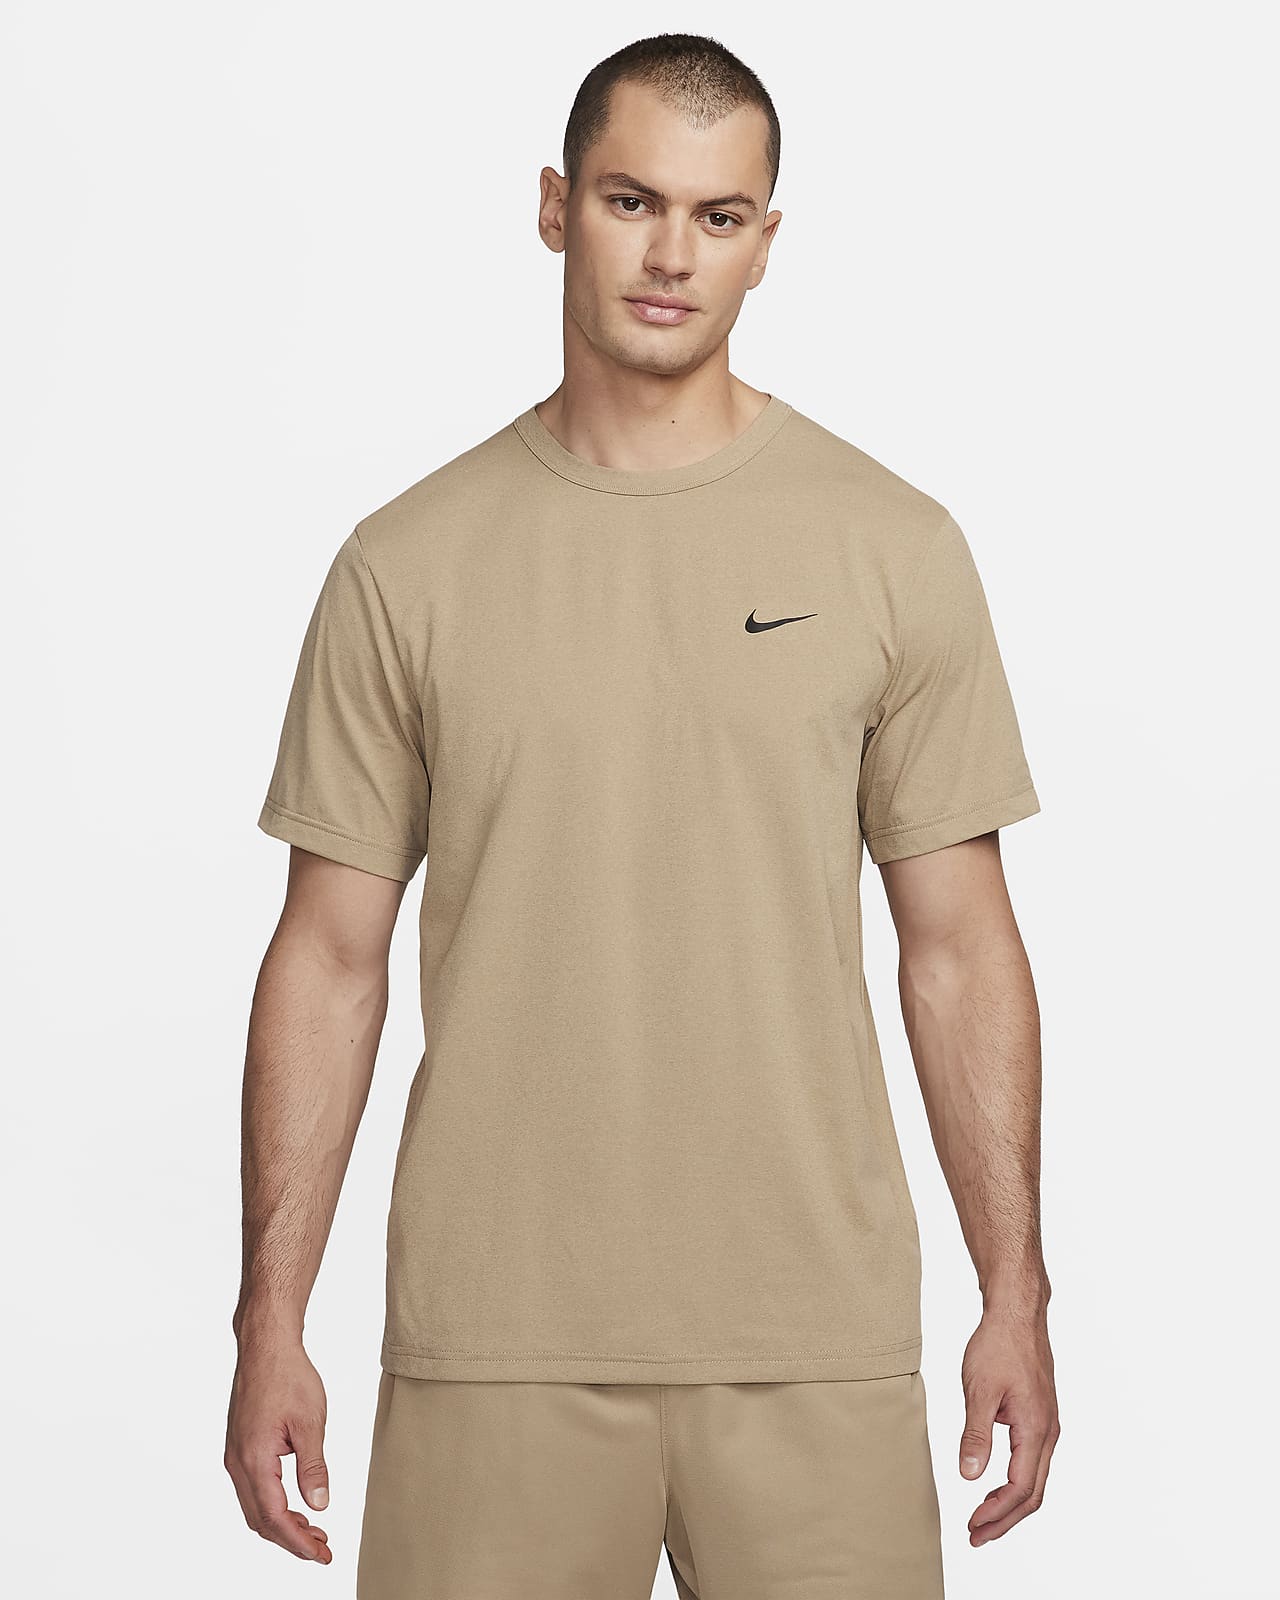 Pánské univerzální tričko Nike Hyverse Dri-FIT UV s krátkým rukávem